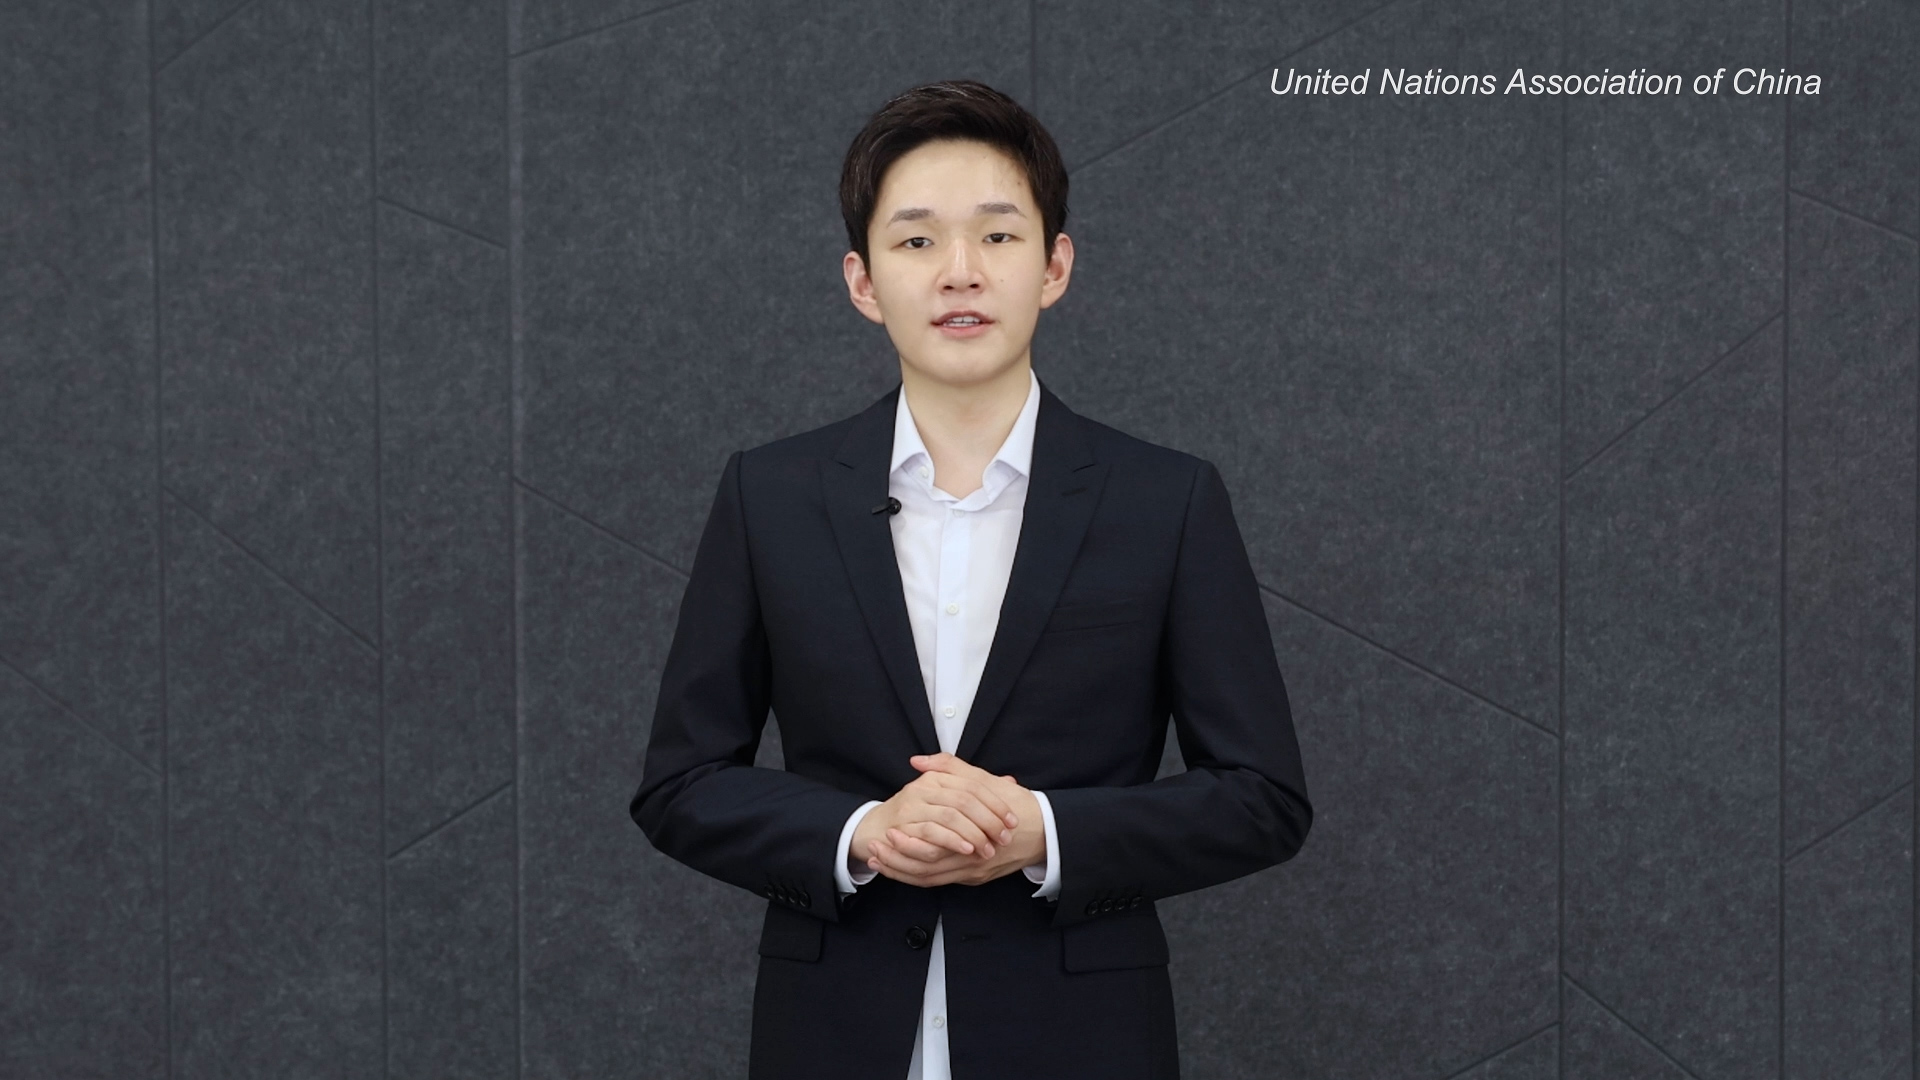 谢承润代表香港青年在联合国人权理事会发言 谈《国安法》带给香港的积极变化